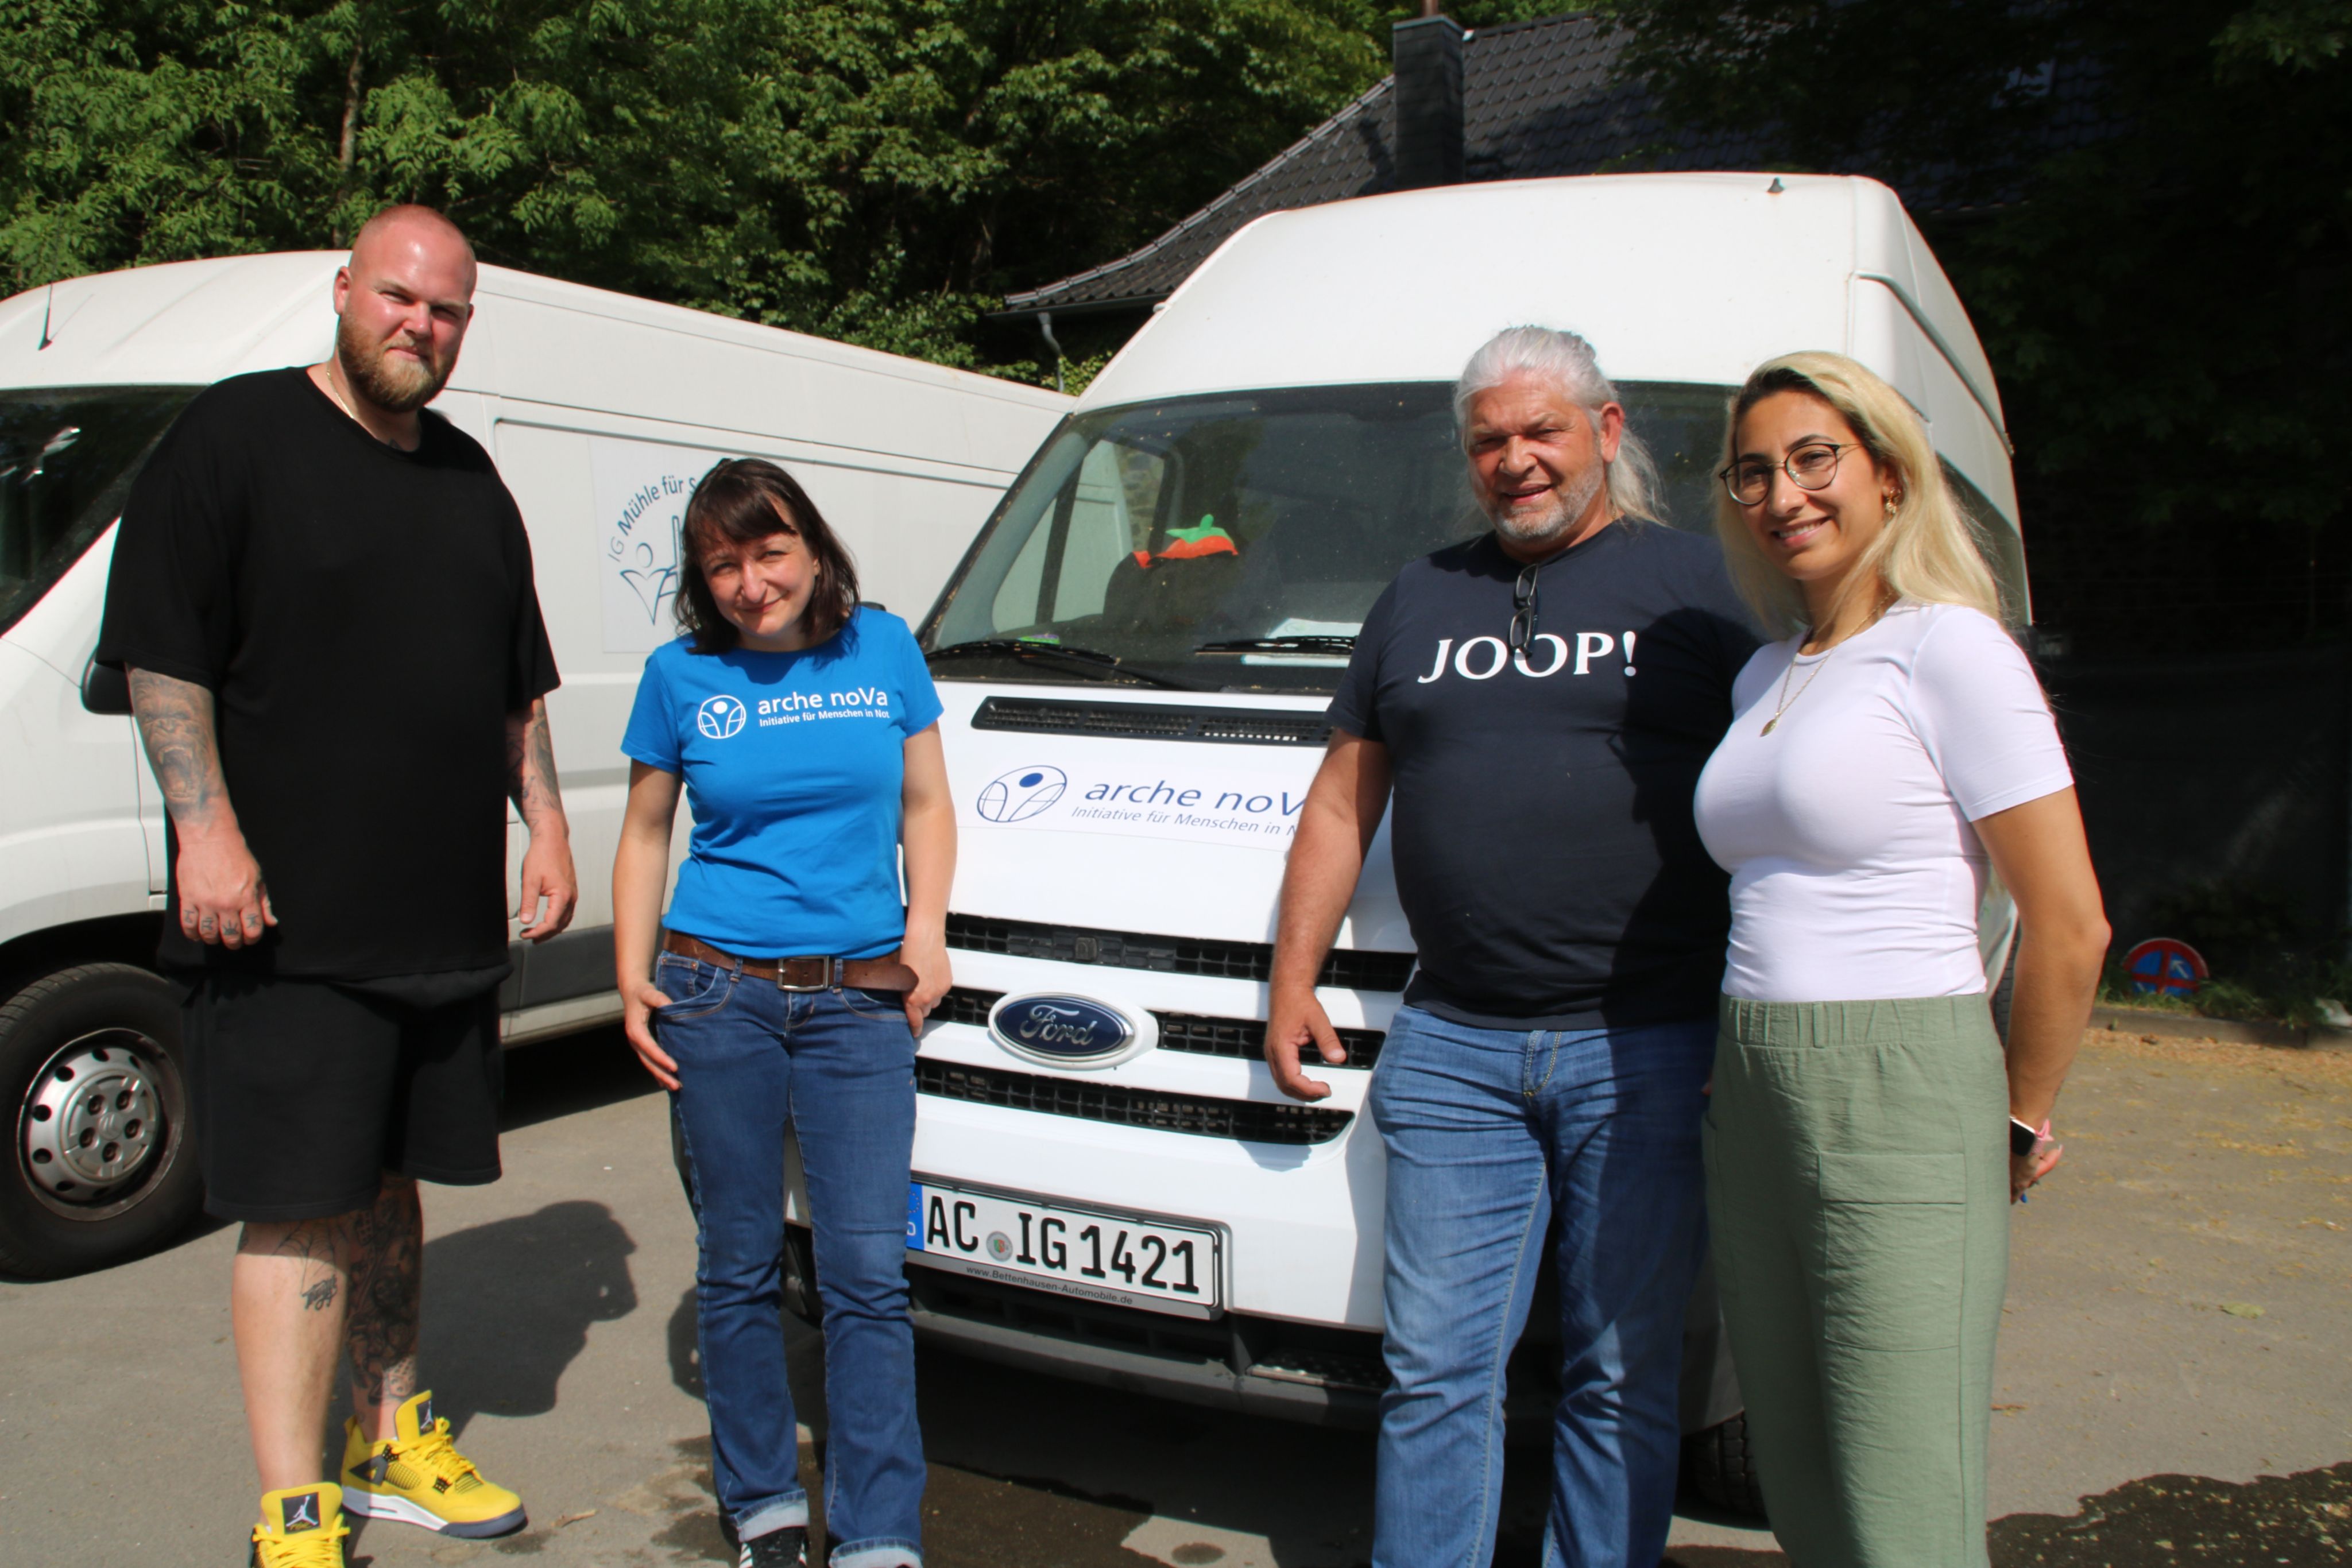 Anke Bartz, Projektleiterin Hochwasserhilfe bei arche noVa, und drei Mitglieder des Vereins IG Mühle für Stolberg. Hinter der Gruppe steht ein weißer Lieferwagen, auf dessen Motorhaube das Logo von arche noVa zu sehen ist.